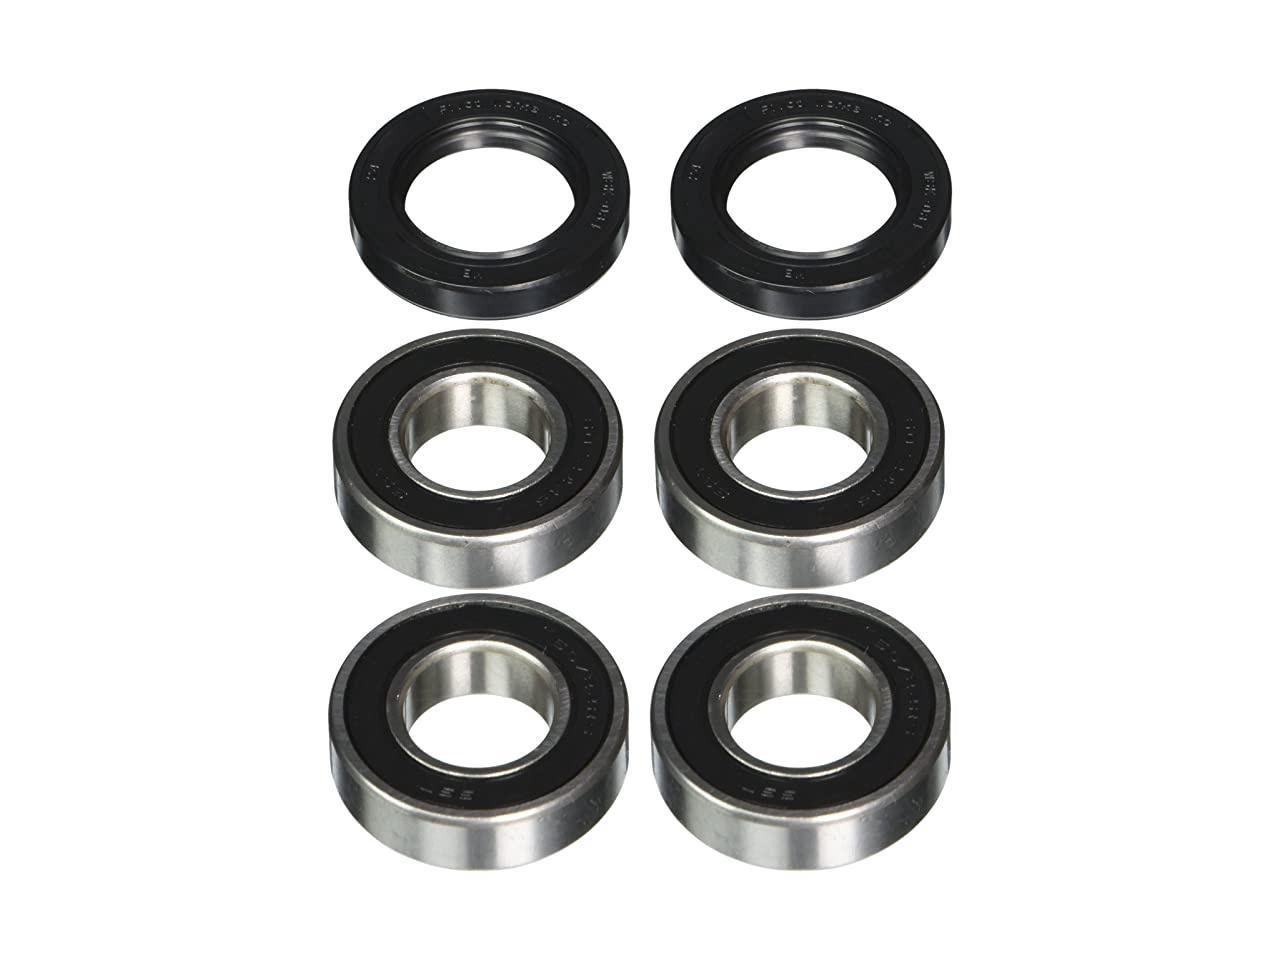 Rear Wheel Bearings & Seals for Kawasaki Mule 520 00-01